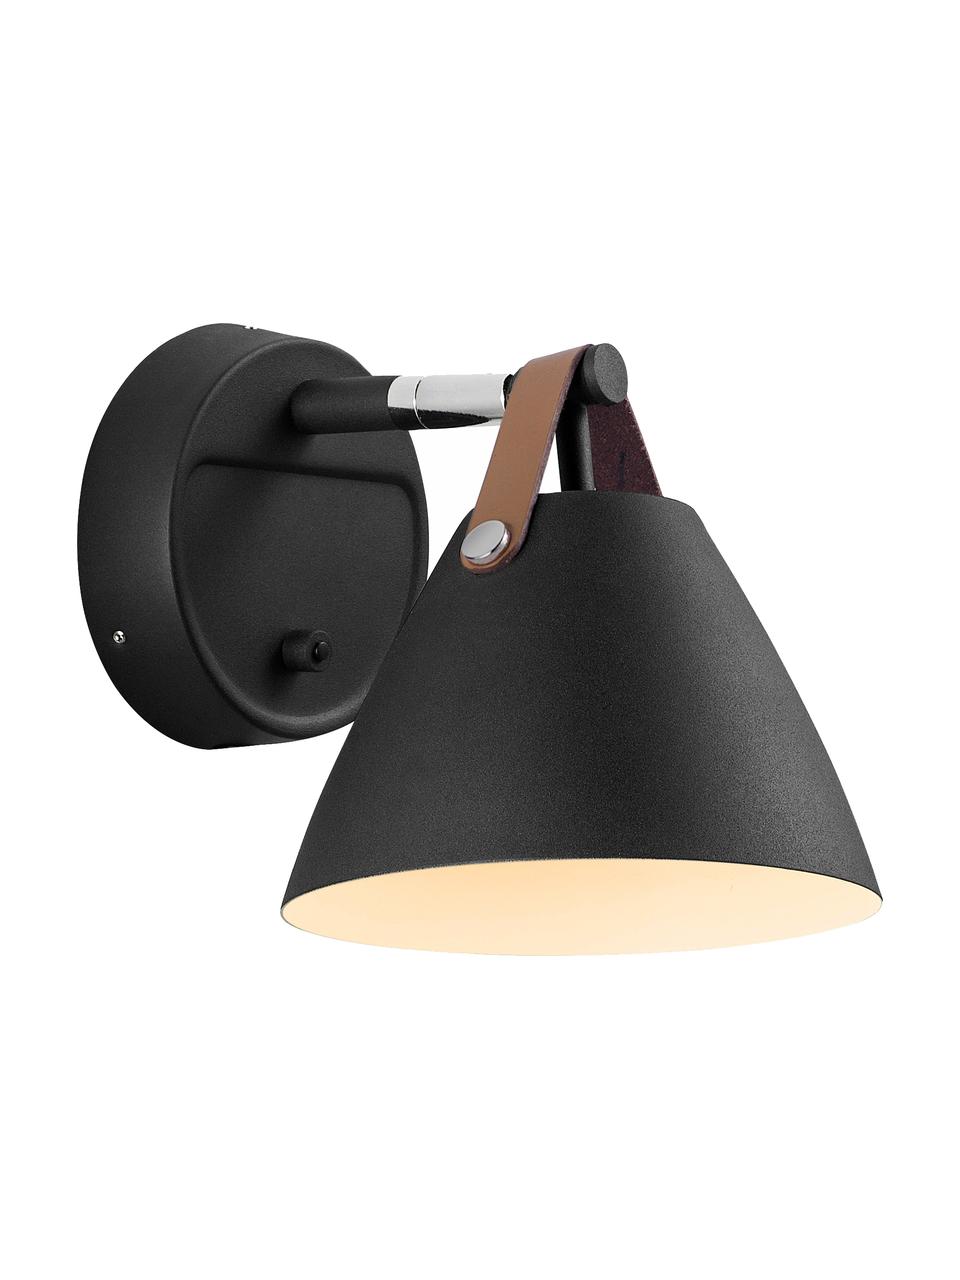 Wandlamp Barnaby met stekker, Lampenkap buitenzijde en wandbevestiging: zwart. Lampenkap binnenzijde: wit, 17 x 17 cm